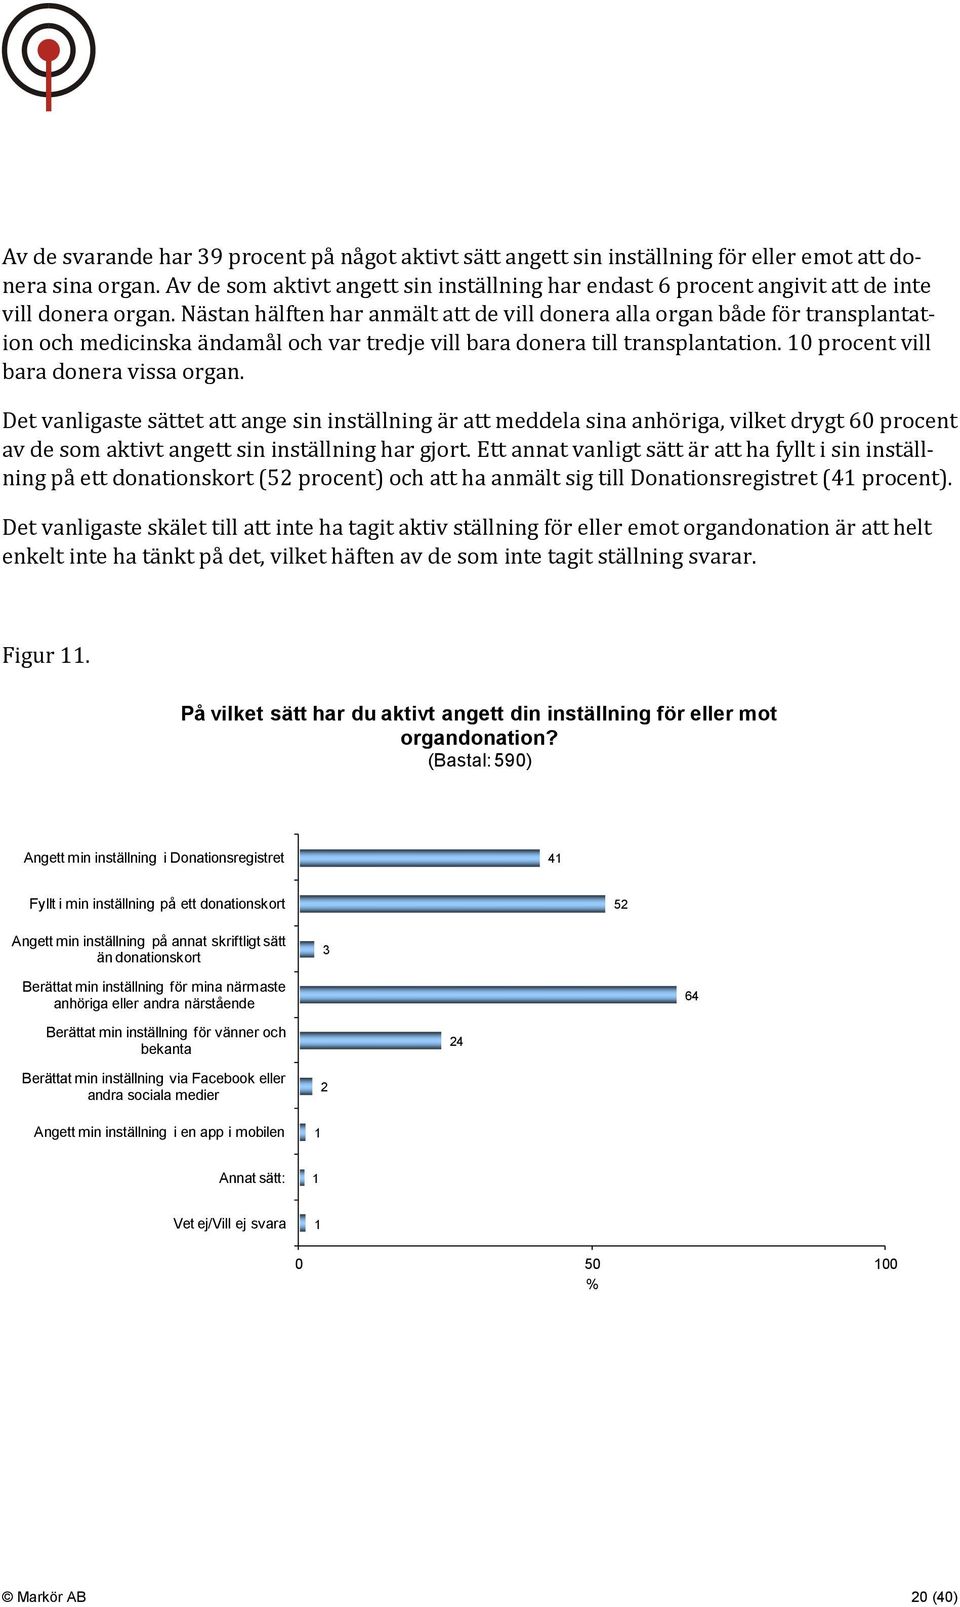 Nästan hälften har anmält att de vill donera alla organ både för transplantation och medicinska ändamål och var tredje vill bara donera till transplantation. 10 procent vill bara donera vissa organ.